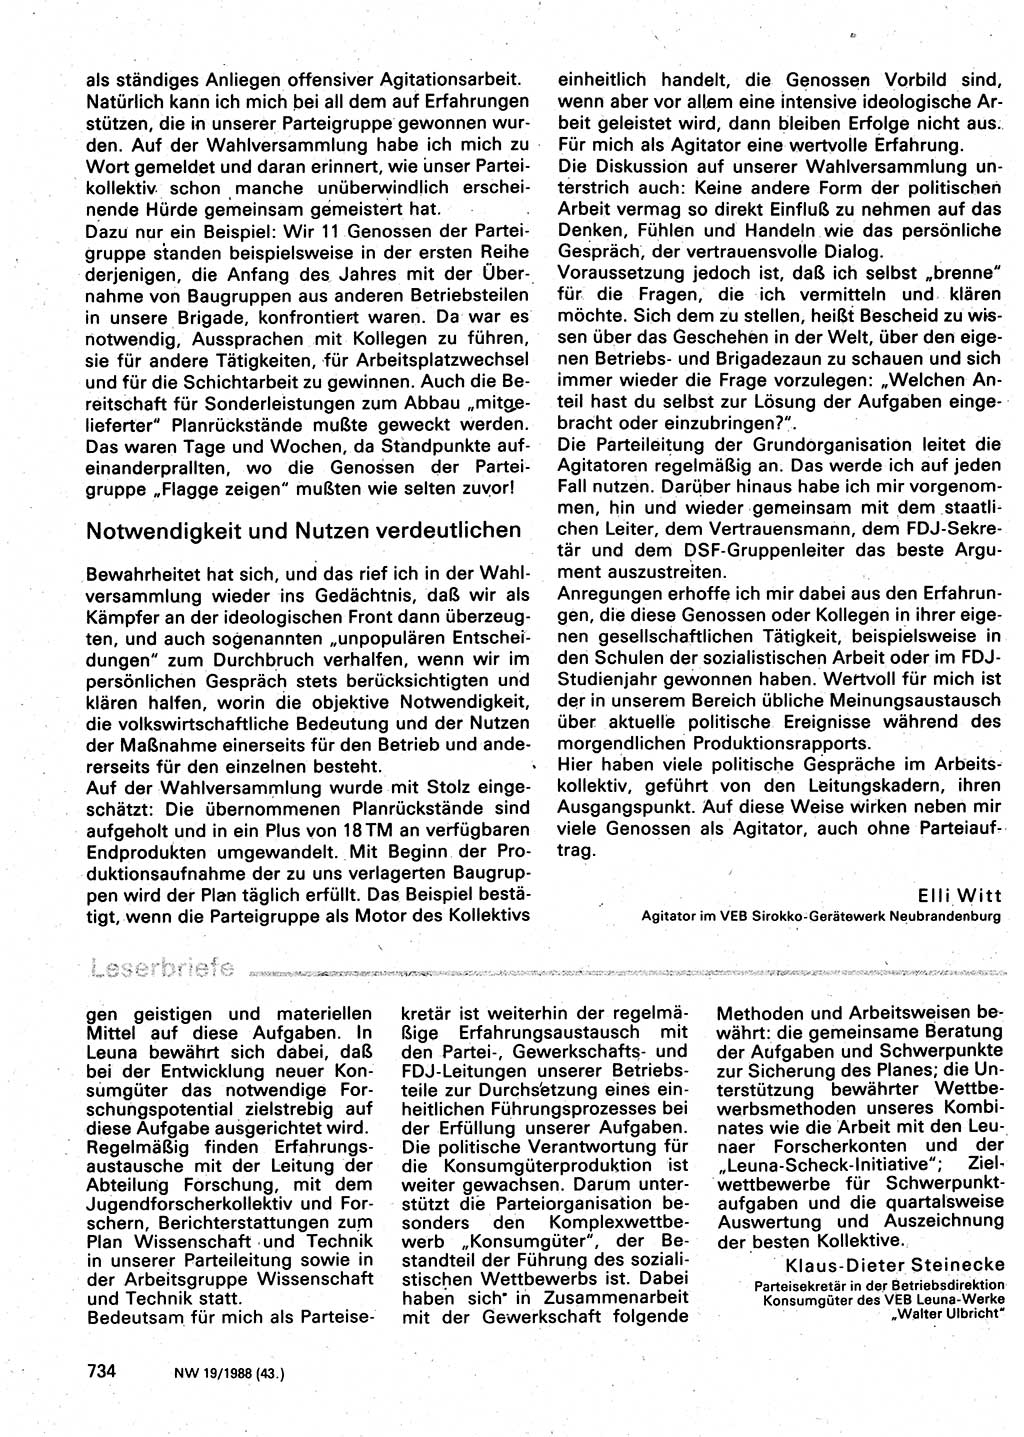 Neuer Weg (NW), Organ des Zentralkomitees (ZK) der SED (Sozialistische Einheitspartei Deutschlands) für Fragen des Parteilebens, 43. Jahrgang [Deutsche Demokratische Republik (DDR)] 1988, Seite 734 (NW ZK SED DDR 1988, S. 734)